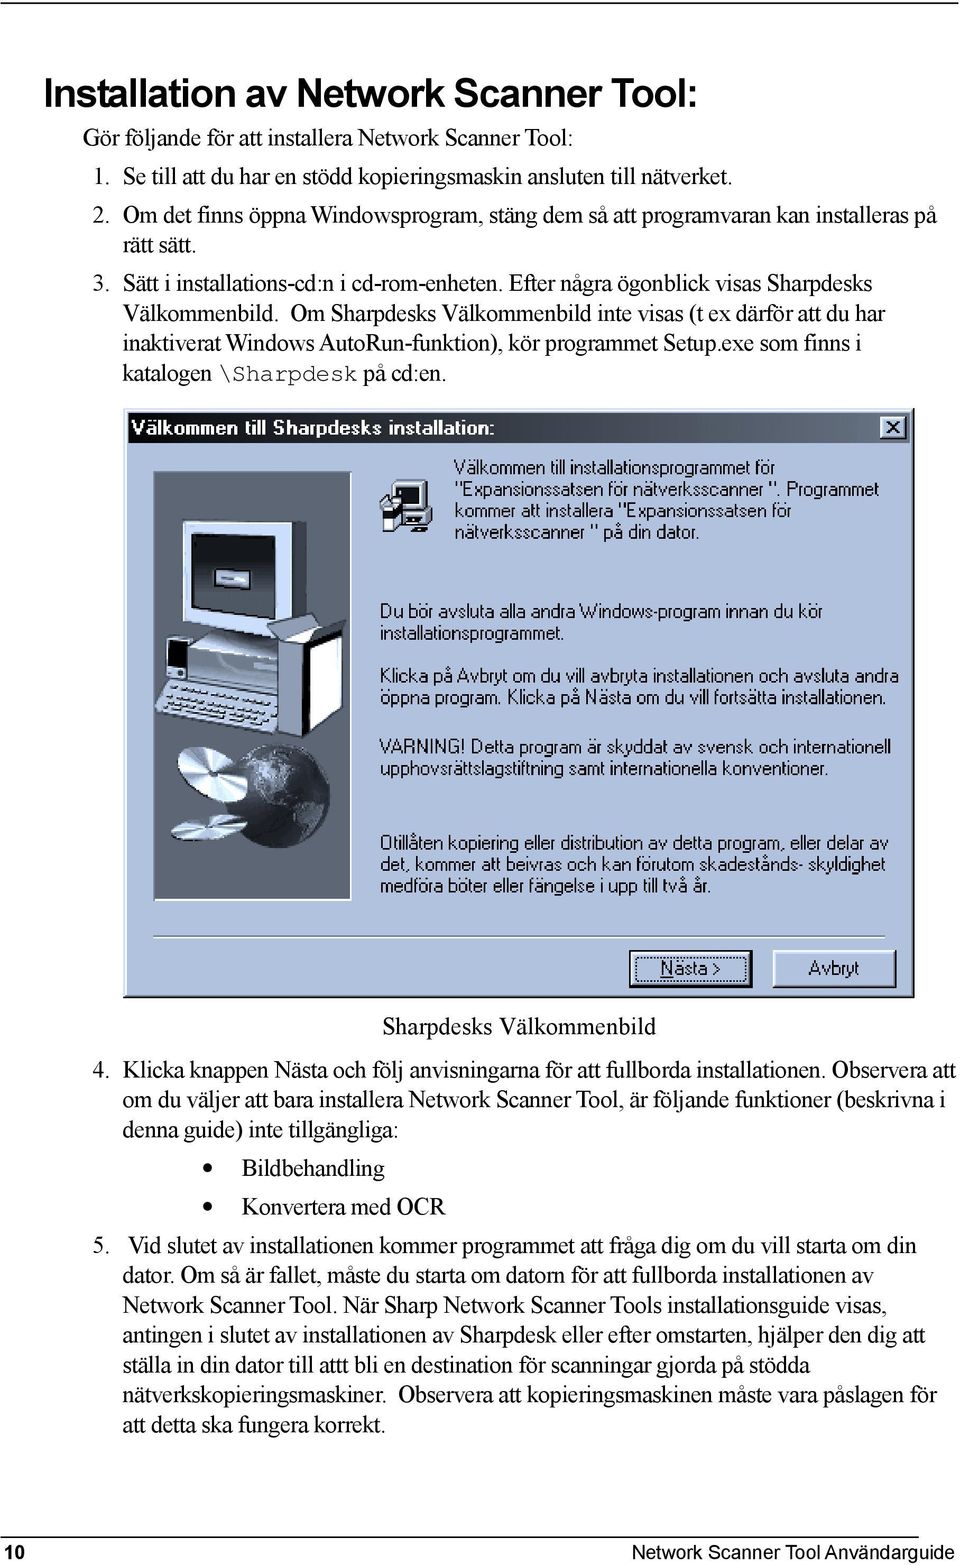 Om Sharpdesks Välkommenbild inte visas (t ex därför att du har inaktiverat Windows AutoRun-funktion), kör programmet Setup.exe som finns i katalogen \Sharpdesk på cd:en. Sharpdesks Välkommenbild 4.